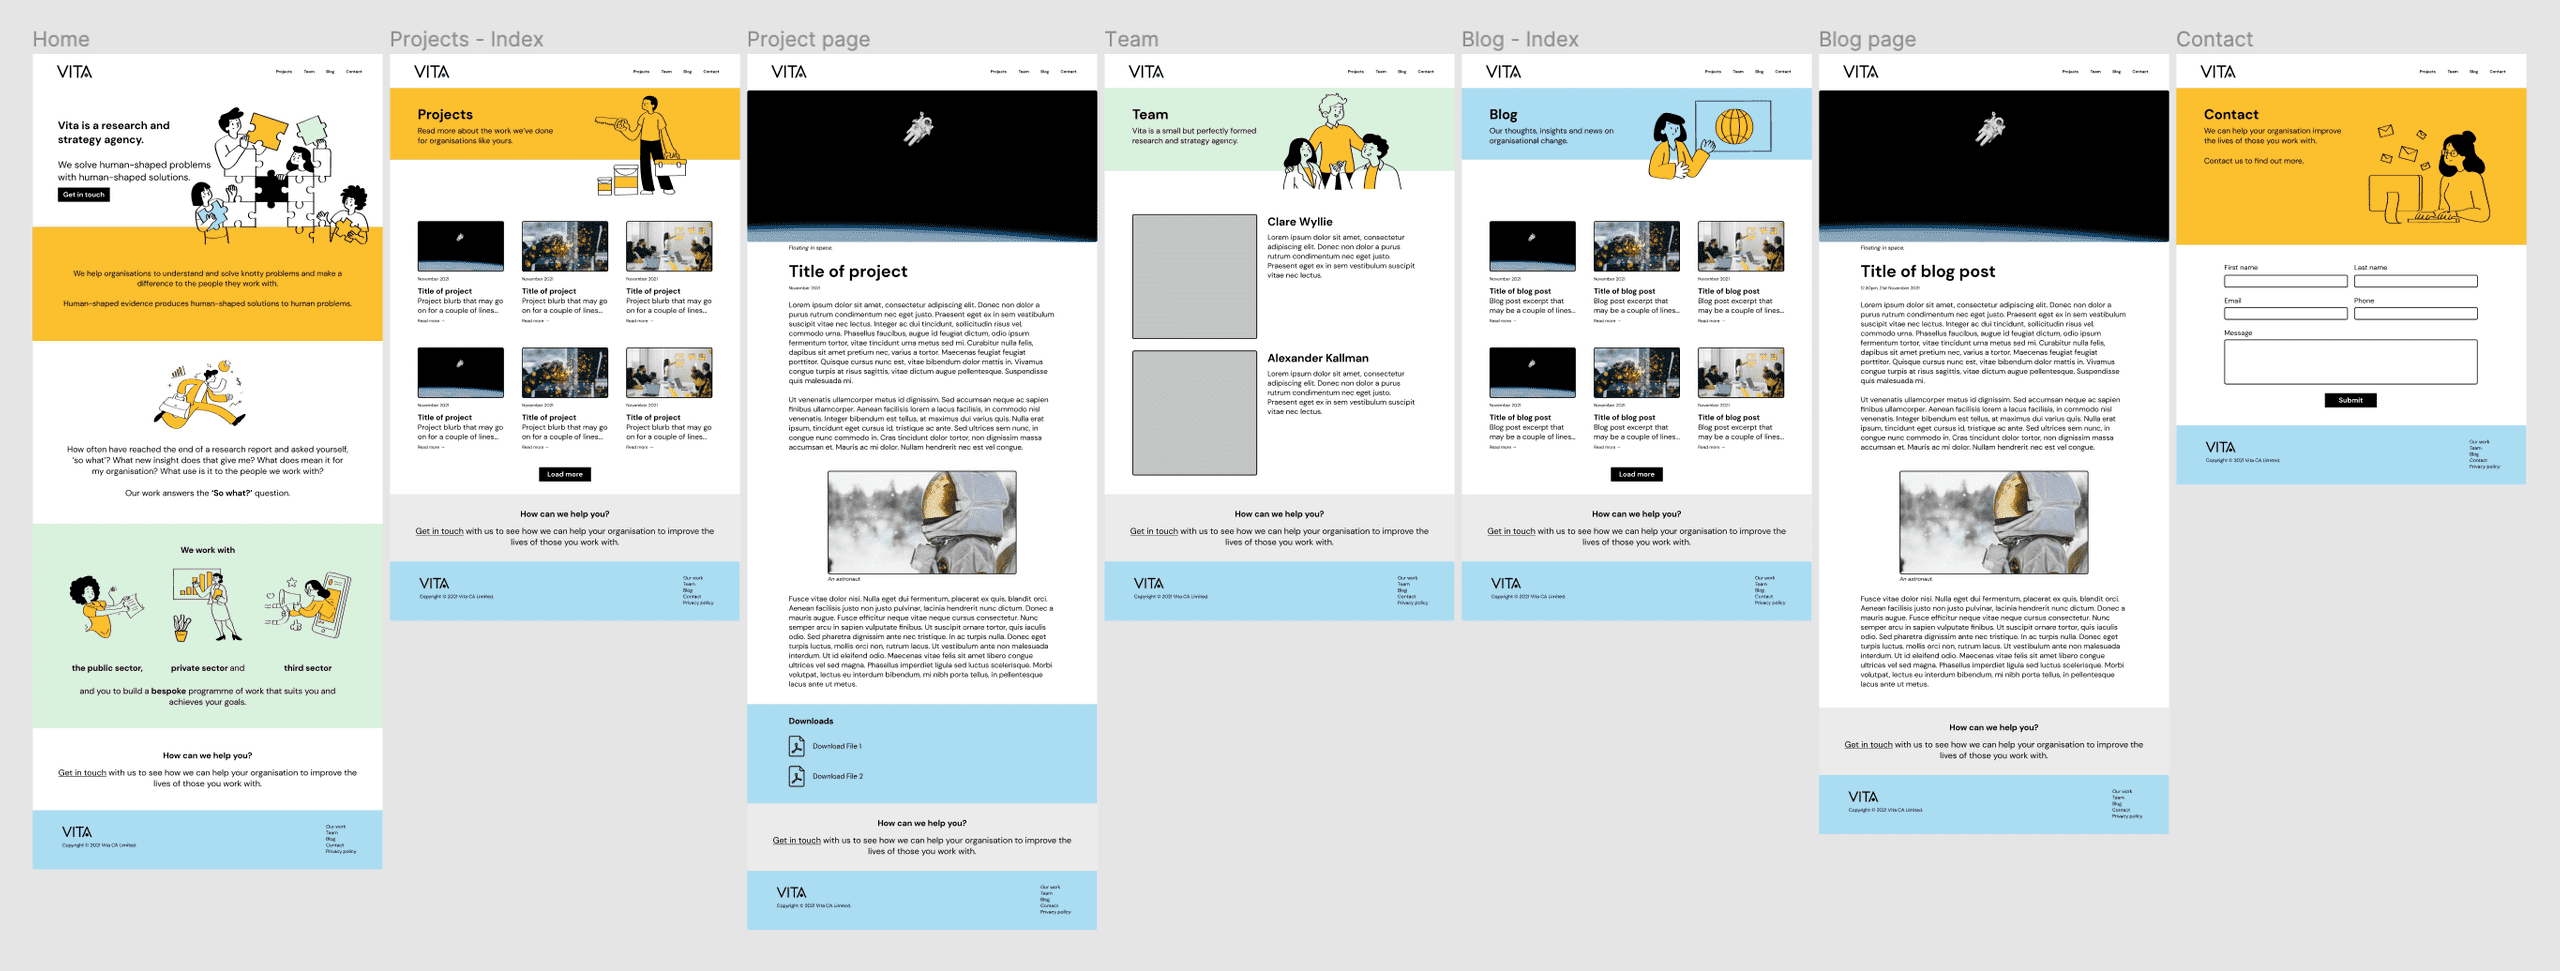 Vita CA website designs in Figma